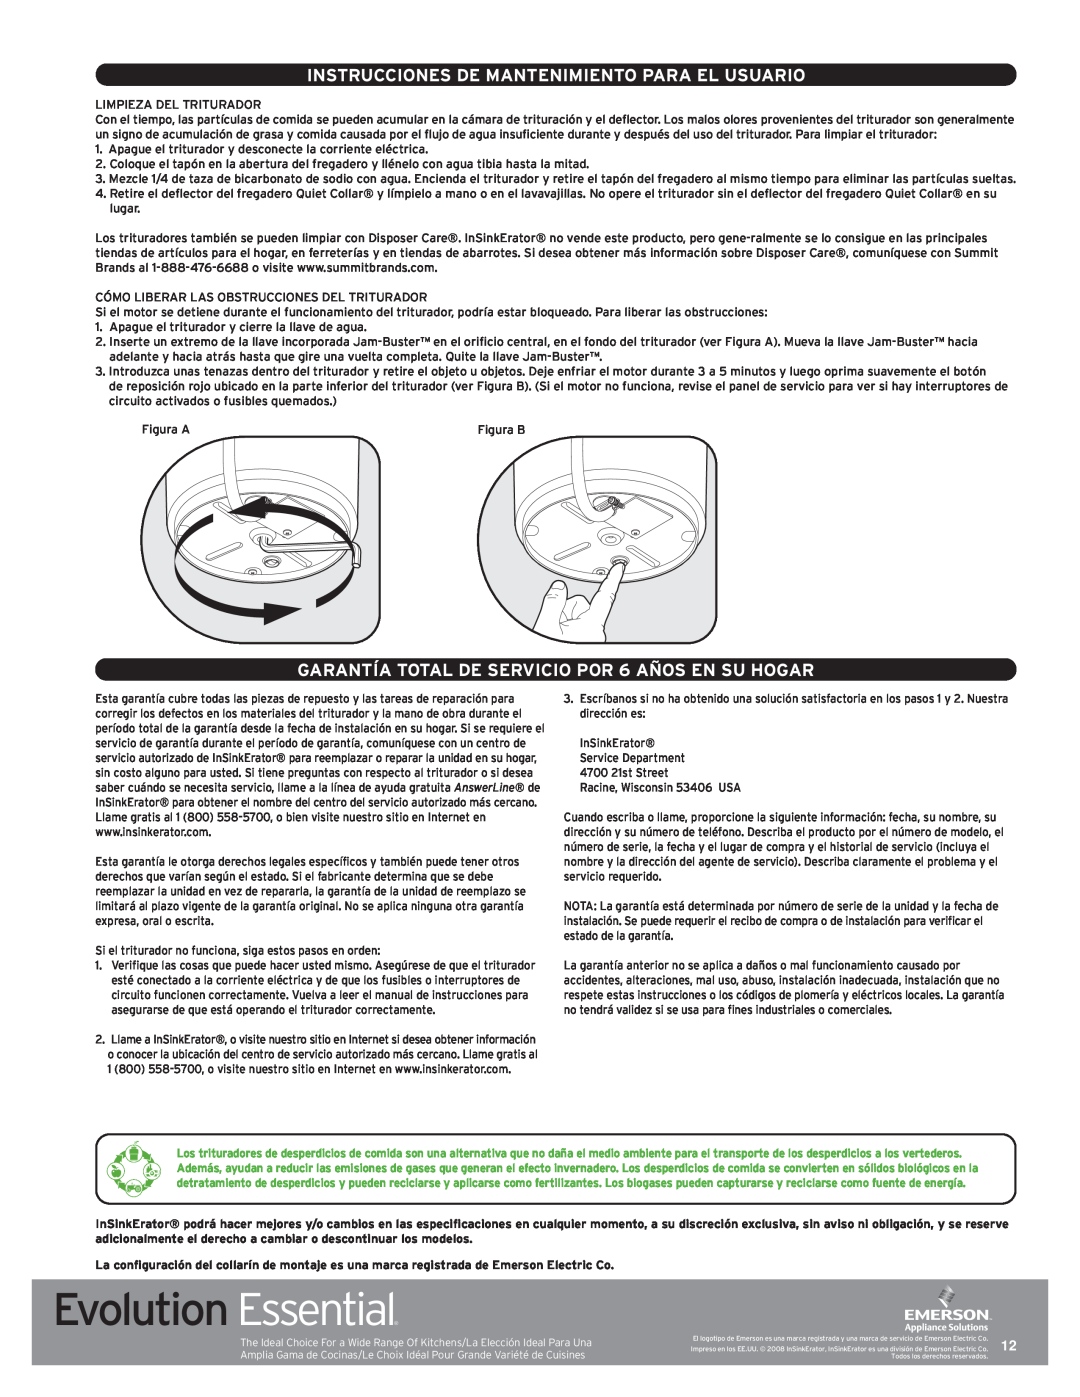 InSinkErator Evolution Essential manual Instrucciones De Mantenimiento Para El Usuario 